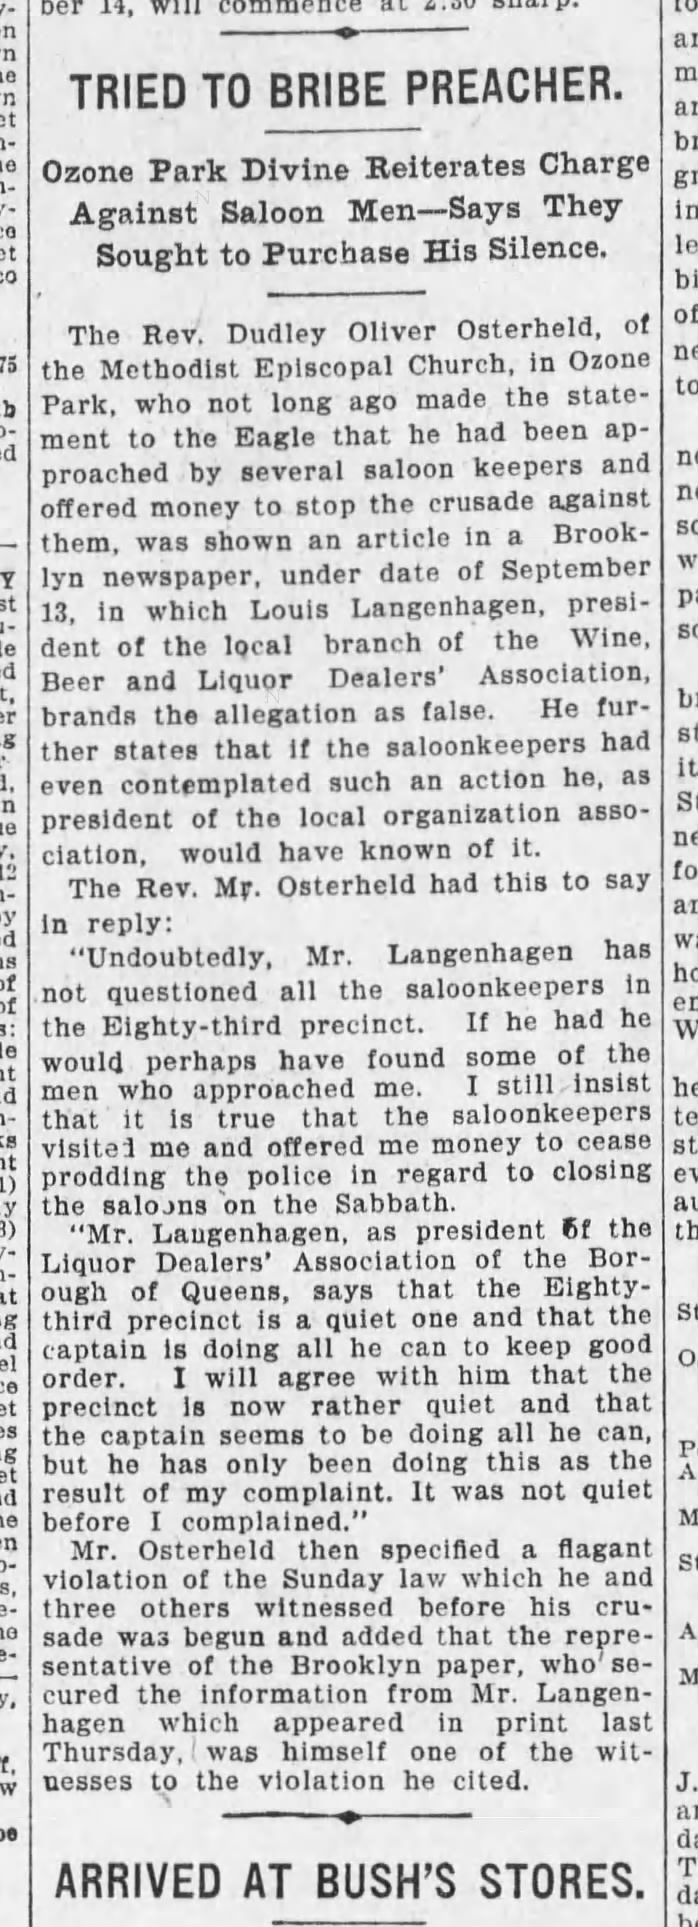 Langenhagen, LG2 - 1906 bribe